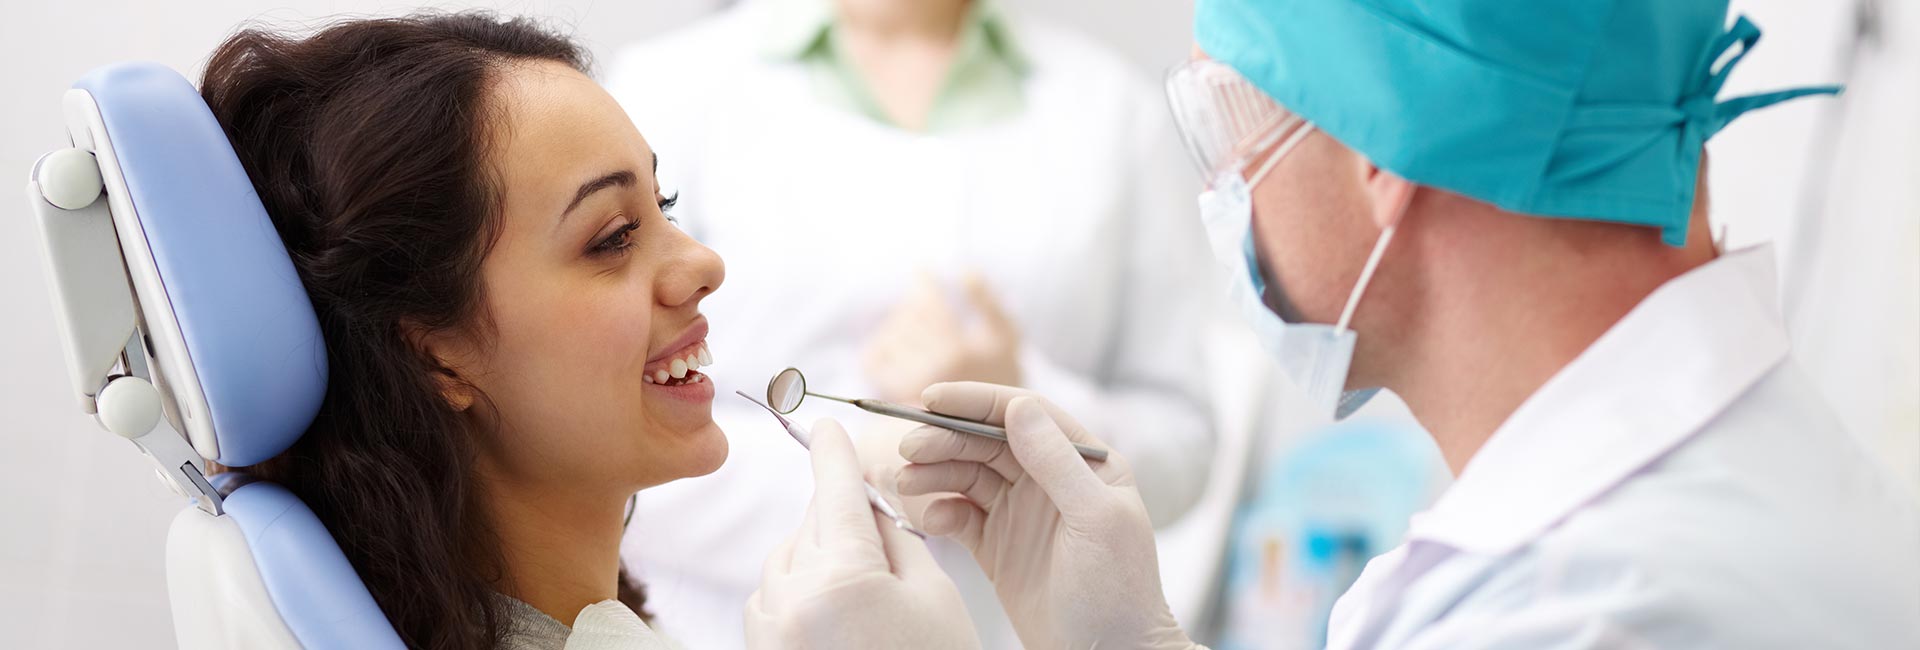 Doctor examining a woman's teeth.jpg